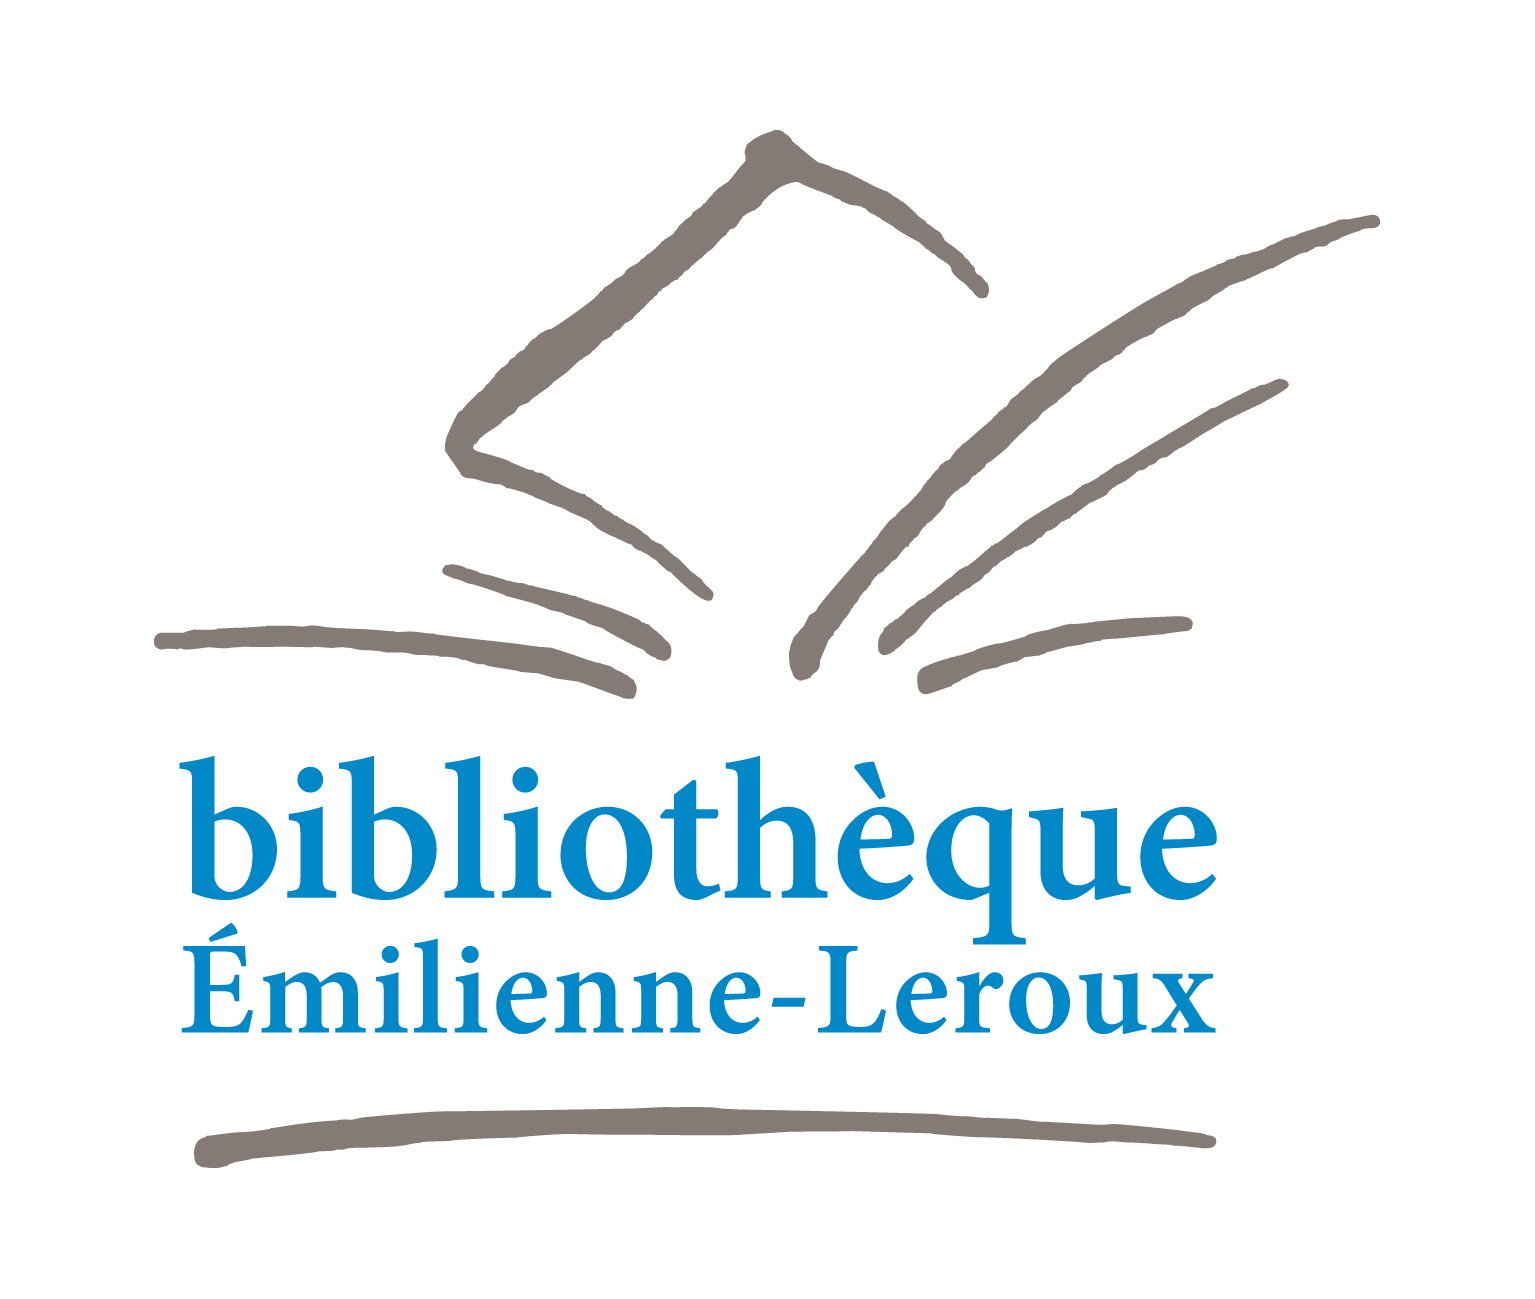 Bibliothèque Emilienne Leroux / ASSOCIATION L.I.R.E.